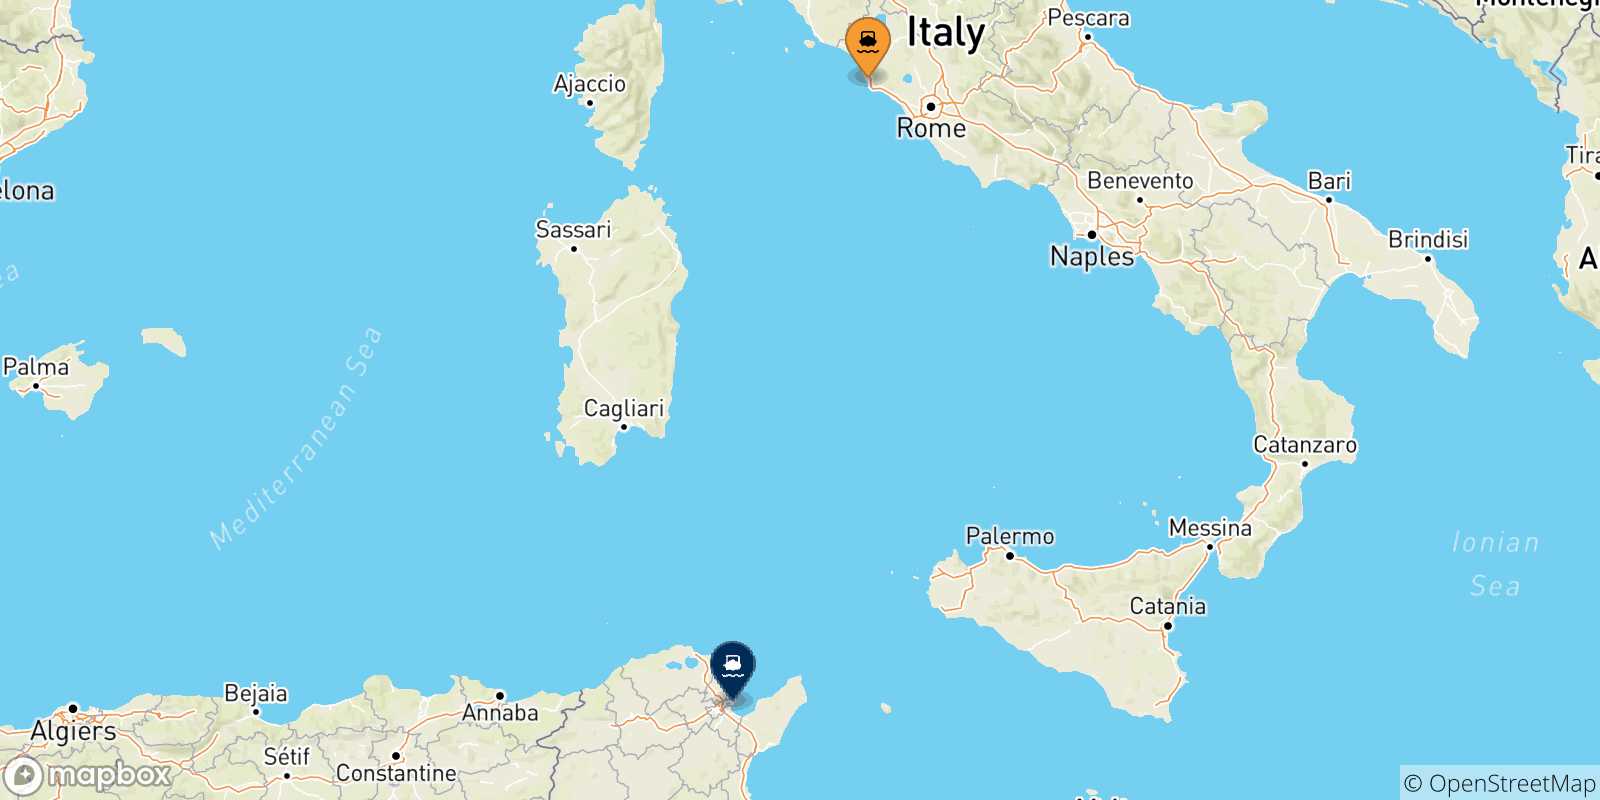 Mappa delle possibili rotte tra Civitavecchia e la Tunisia